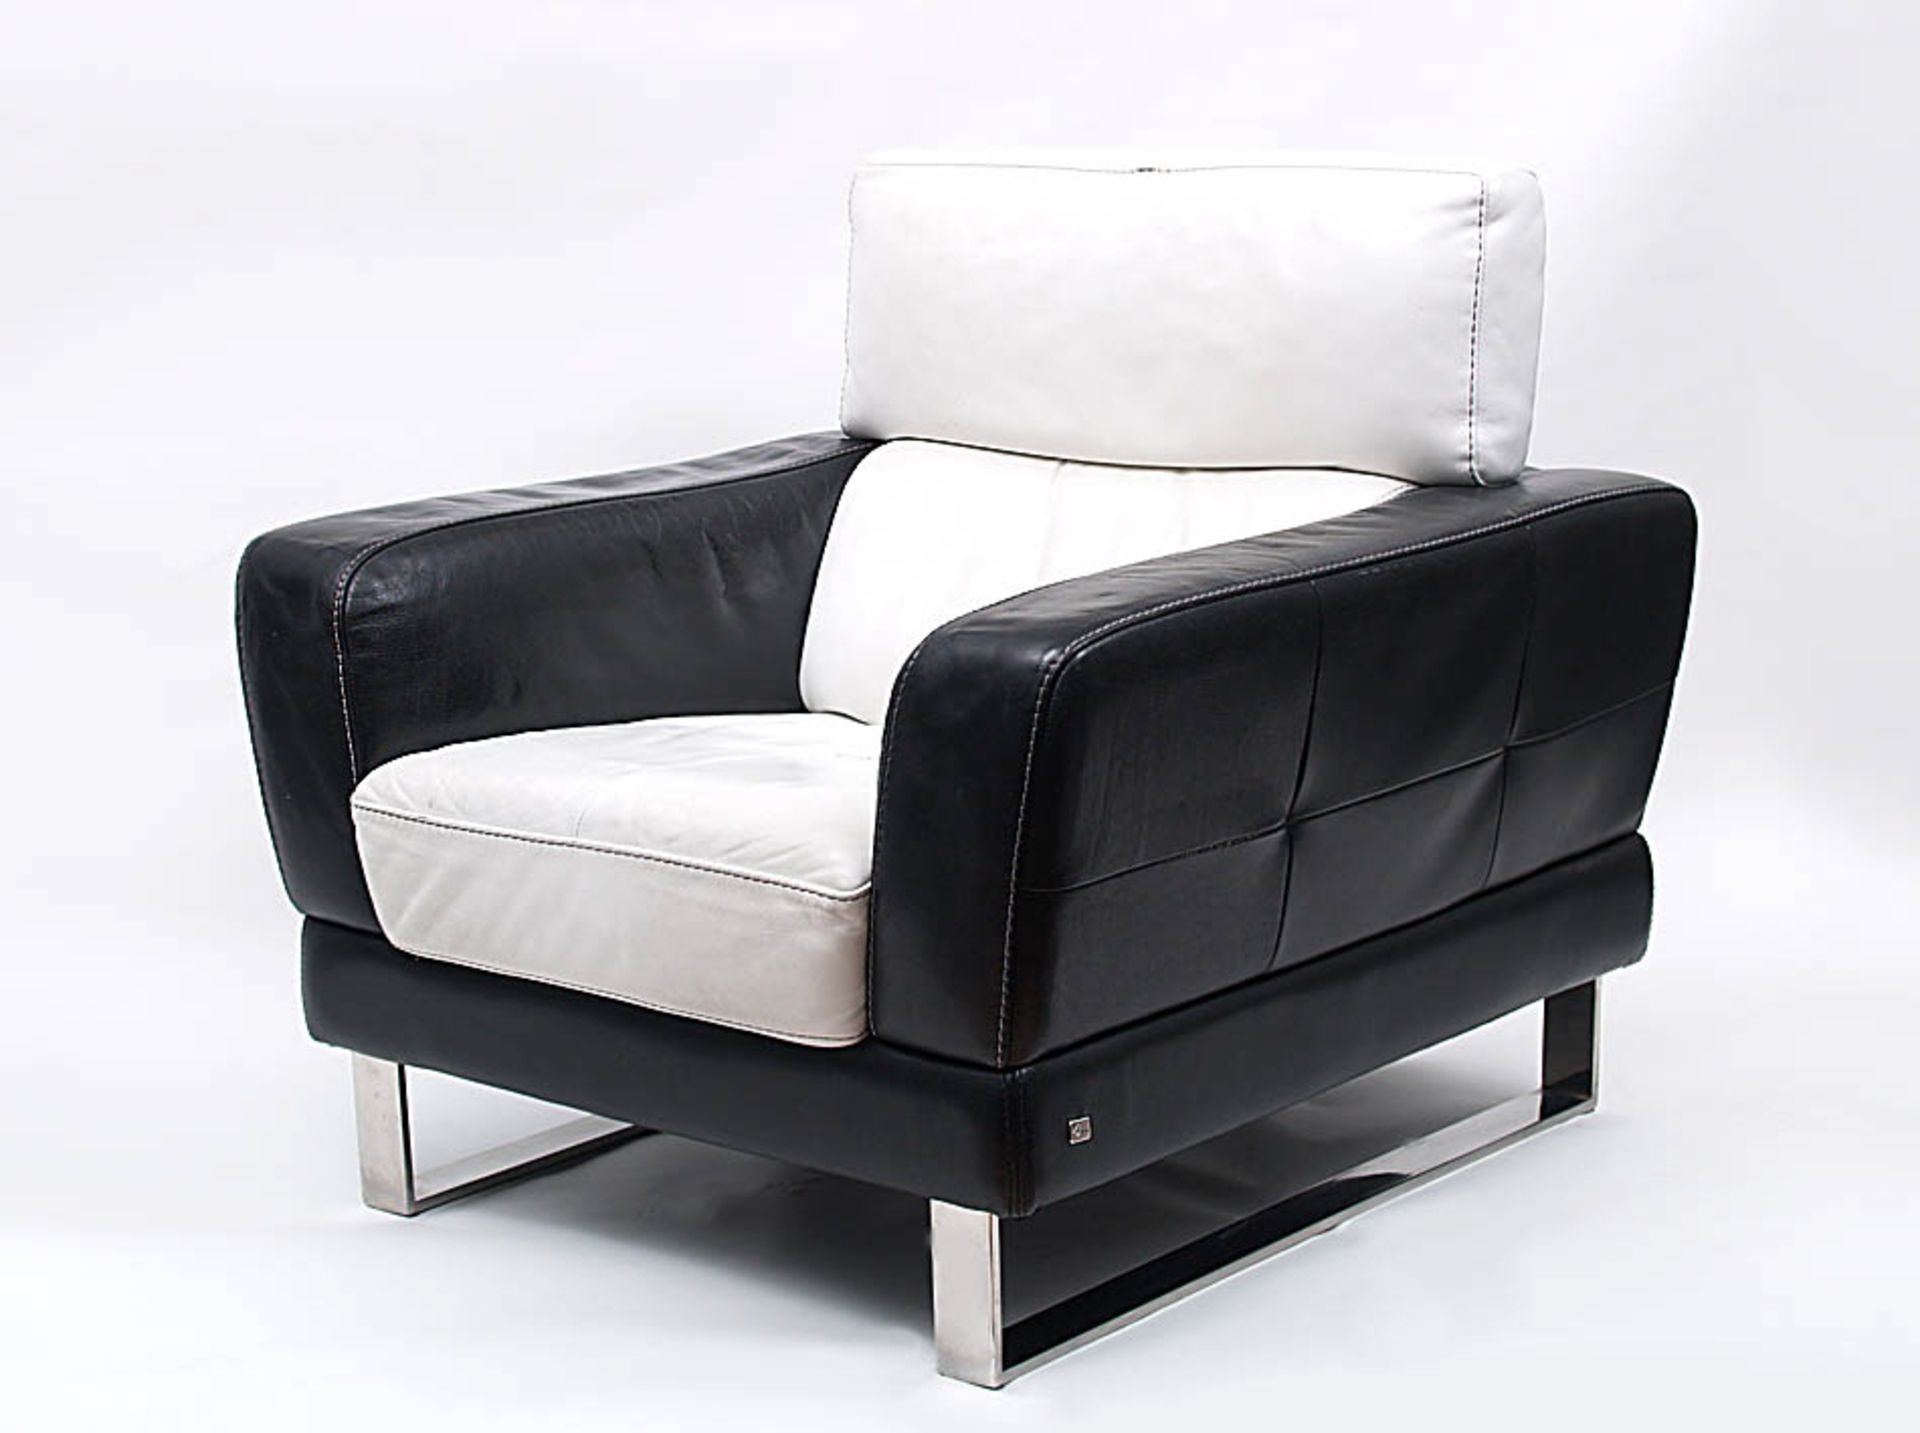 SesselHTL International. Am Sessel Metalletikett. Schwarzes und weißes Leder, Kufenfüße Metall